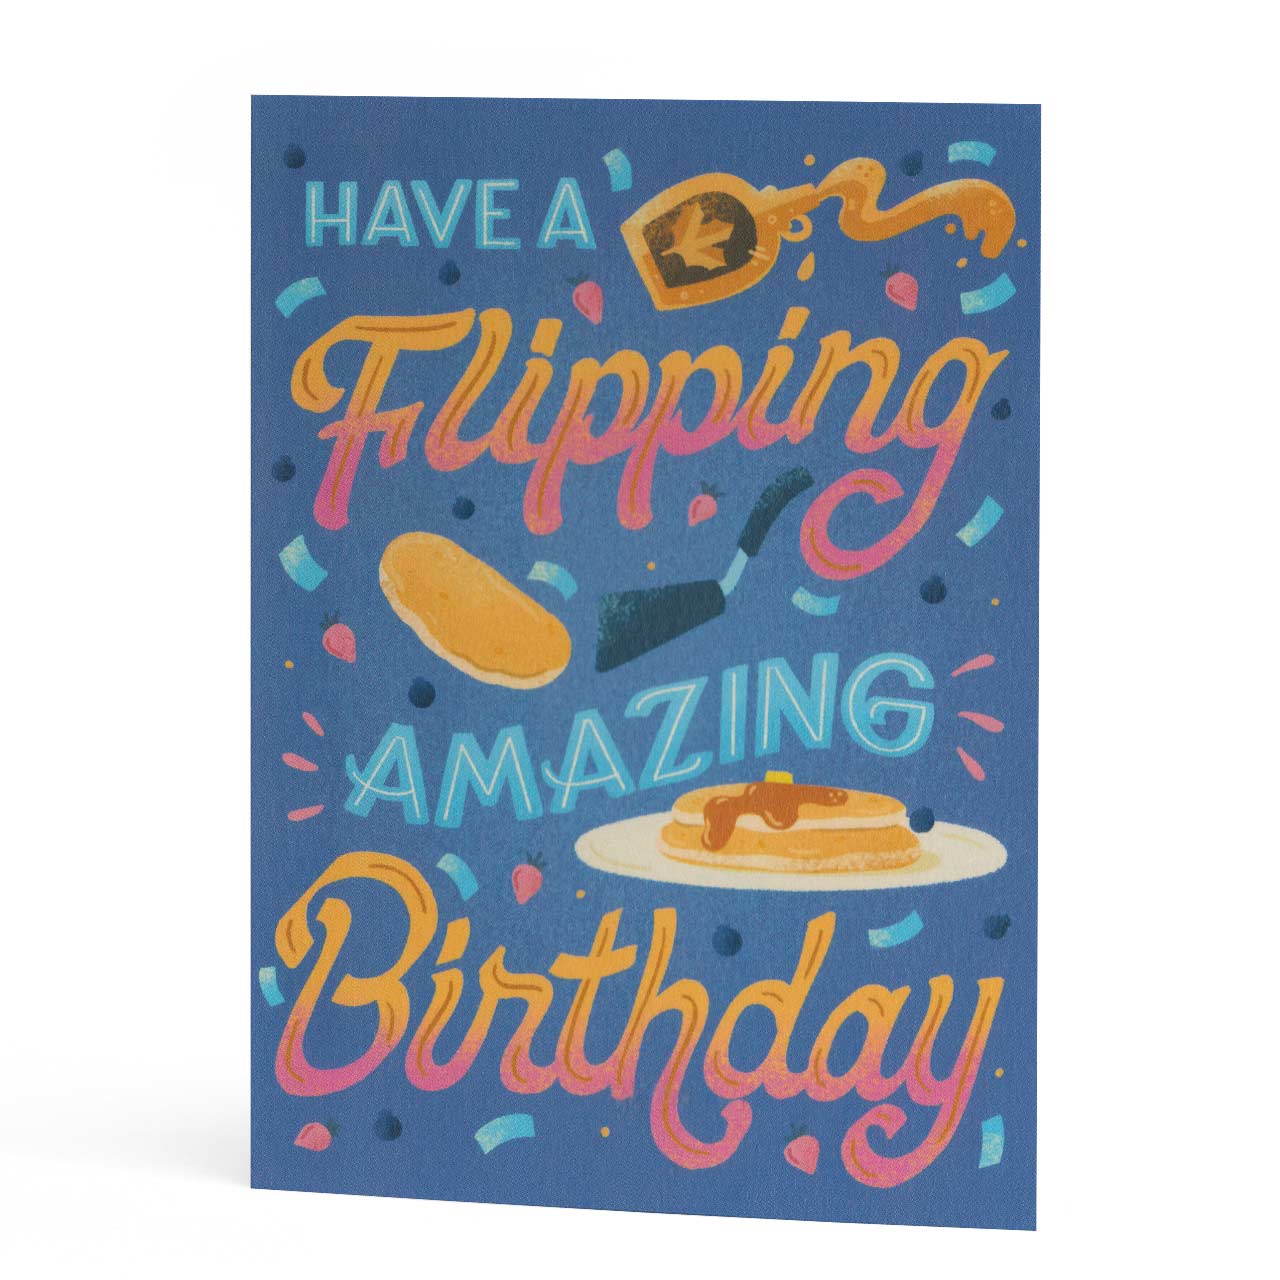 Flipping Amazing Birthday Card